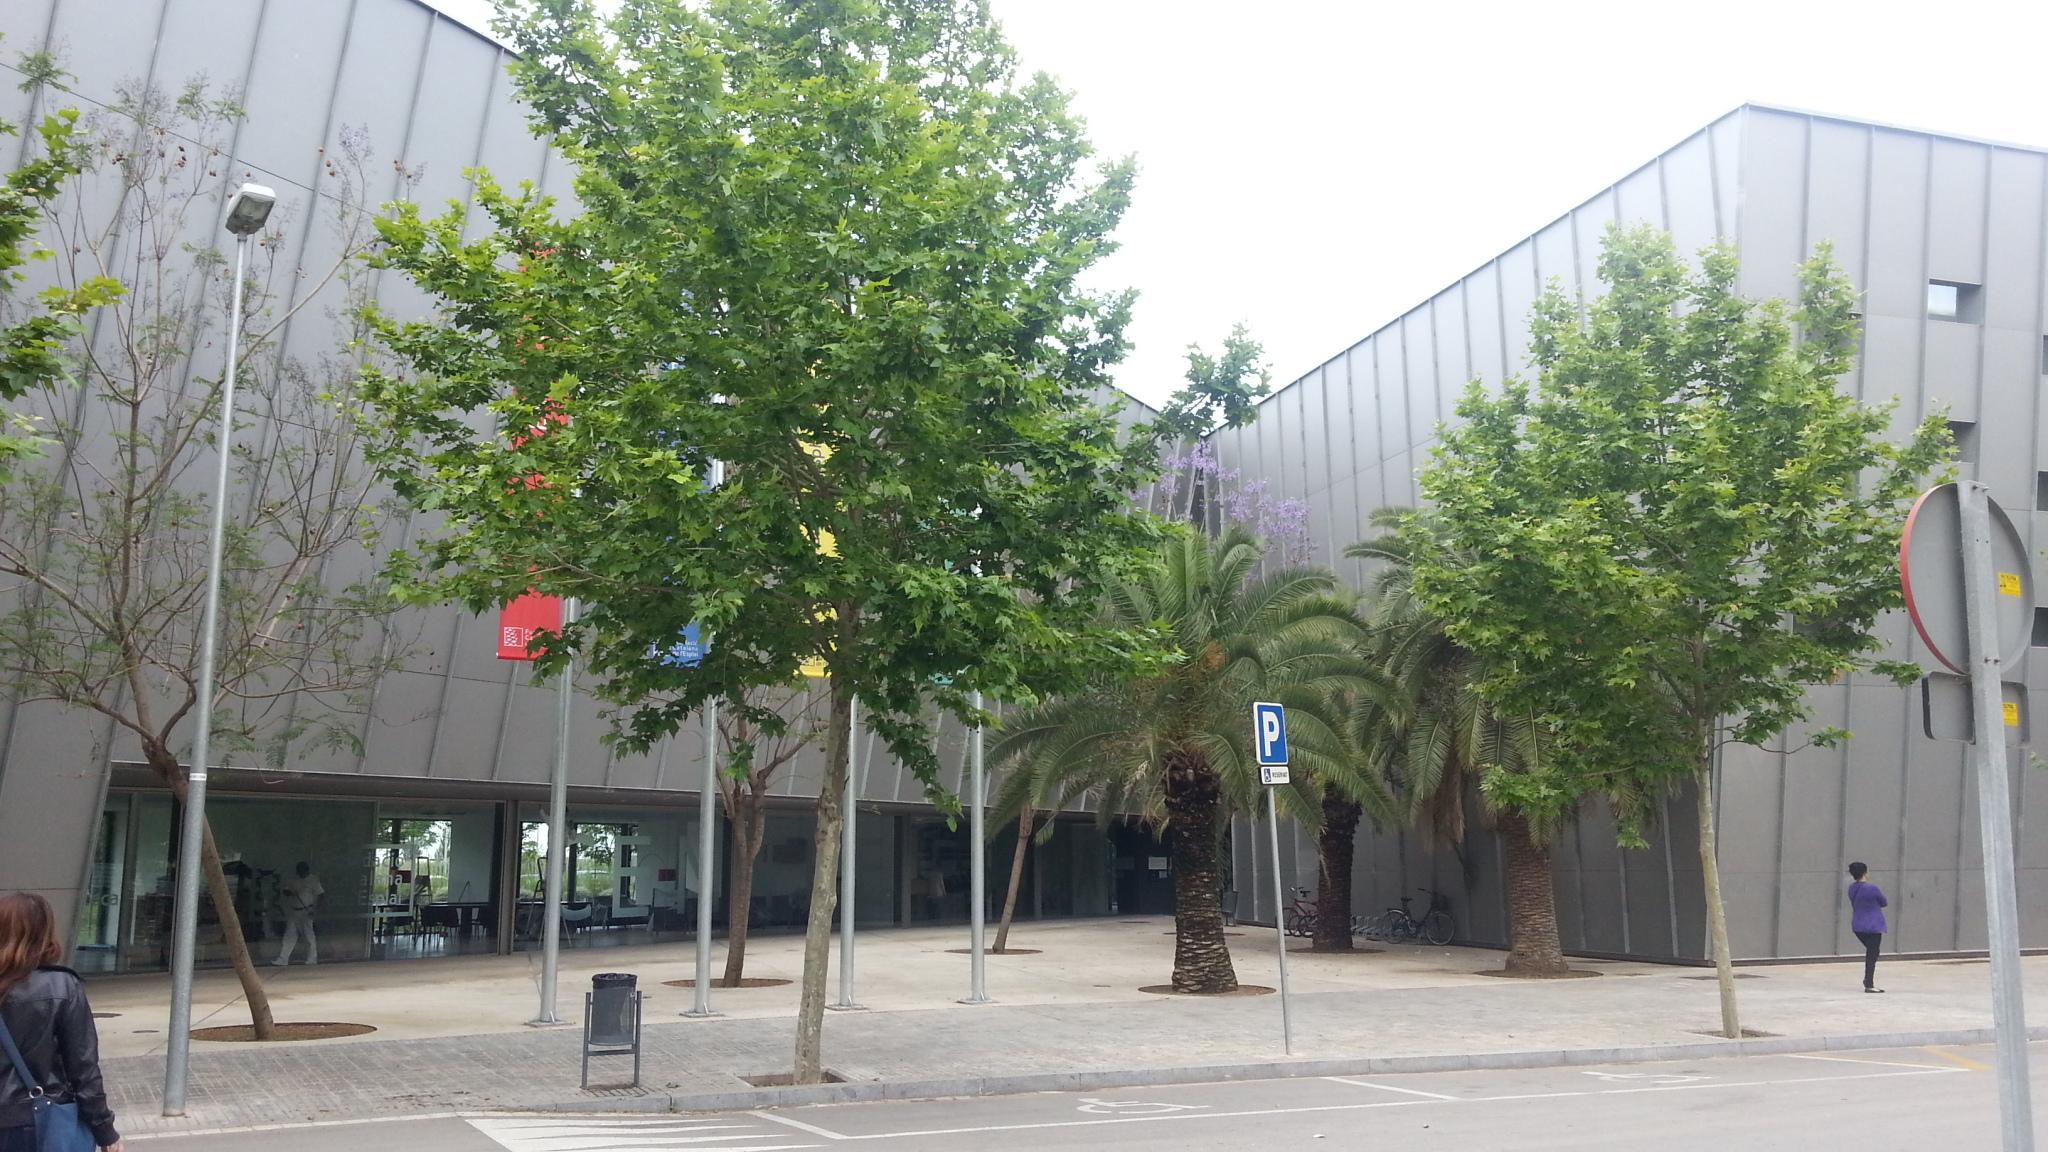 Centre Esplai Albergue El Prat de Llobregat Zewnętrze zdjęcie